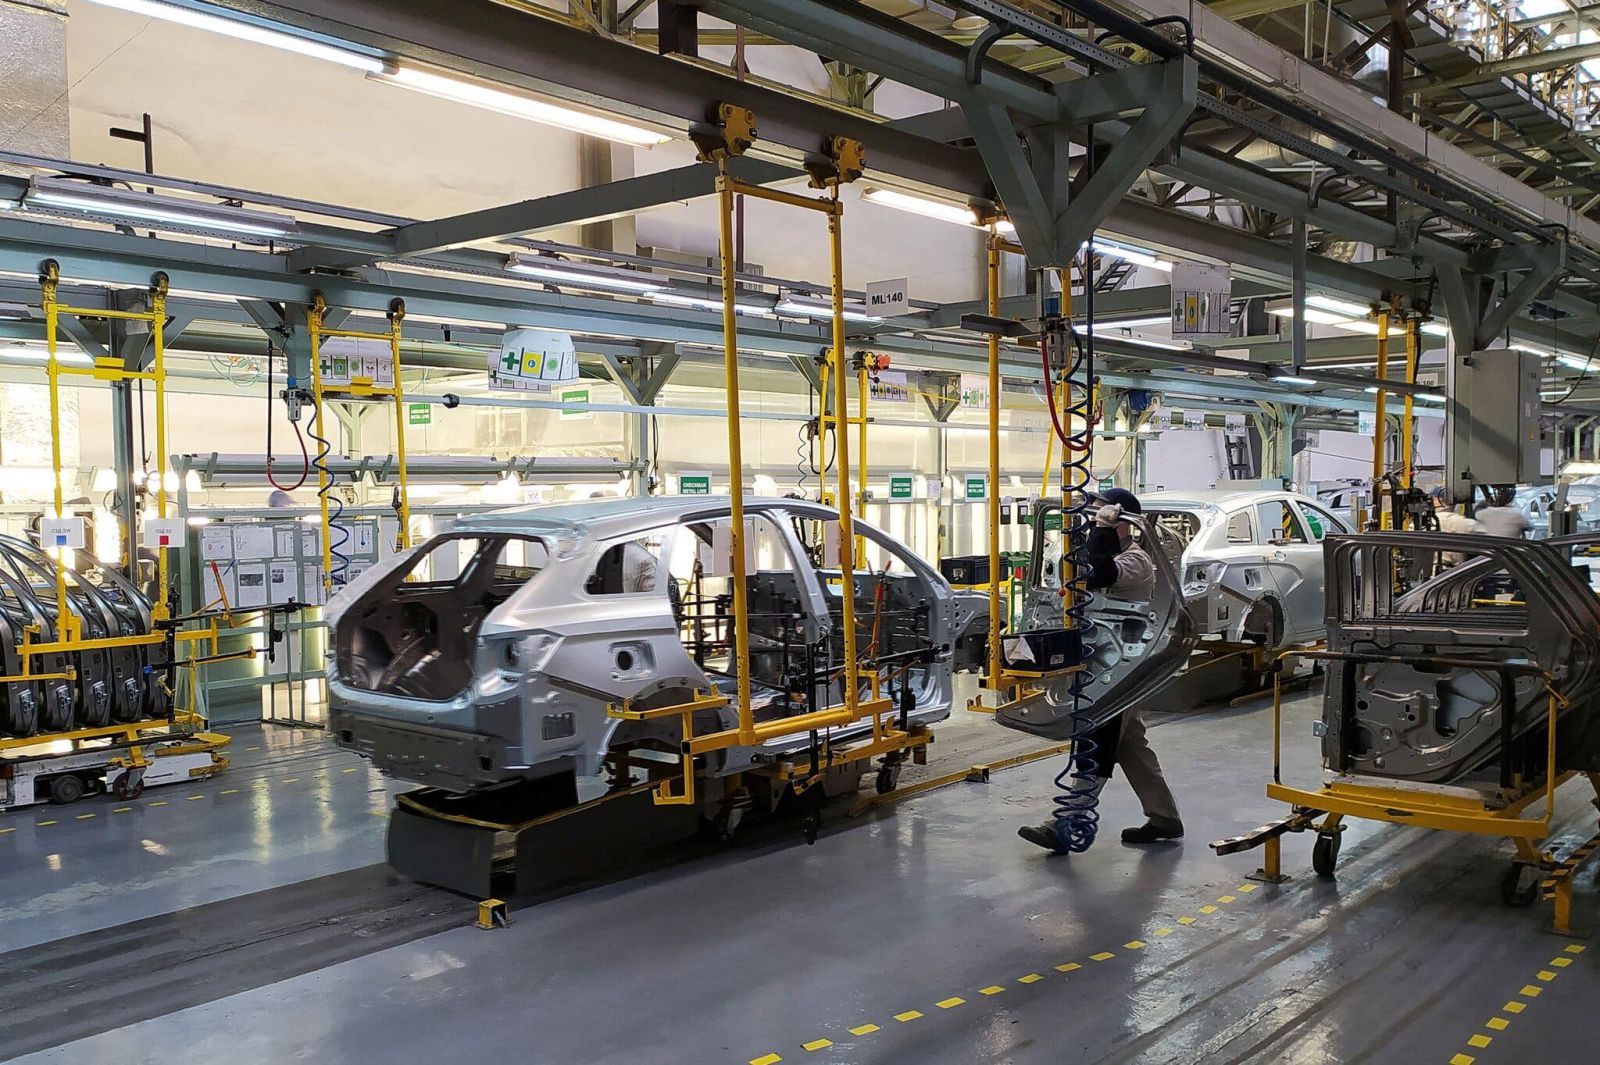 nhà máy Lada, ở Izhevsk, Nga, thuộc Tập đoàn Avtovaz, có quan hệ đối tác với Renault.